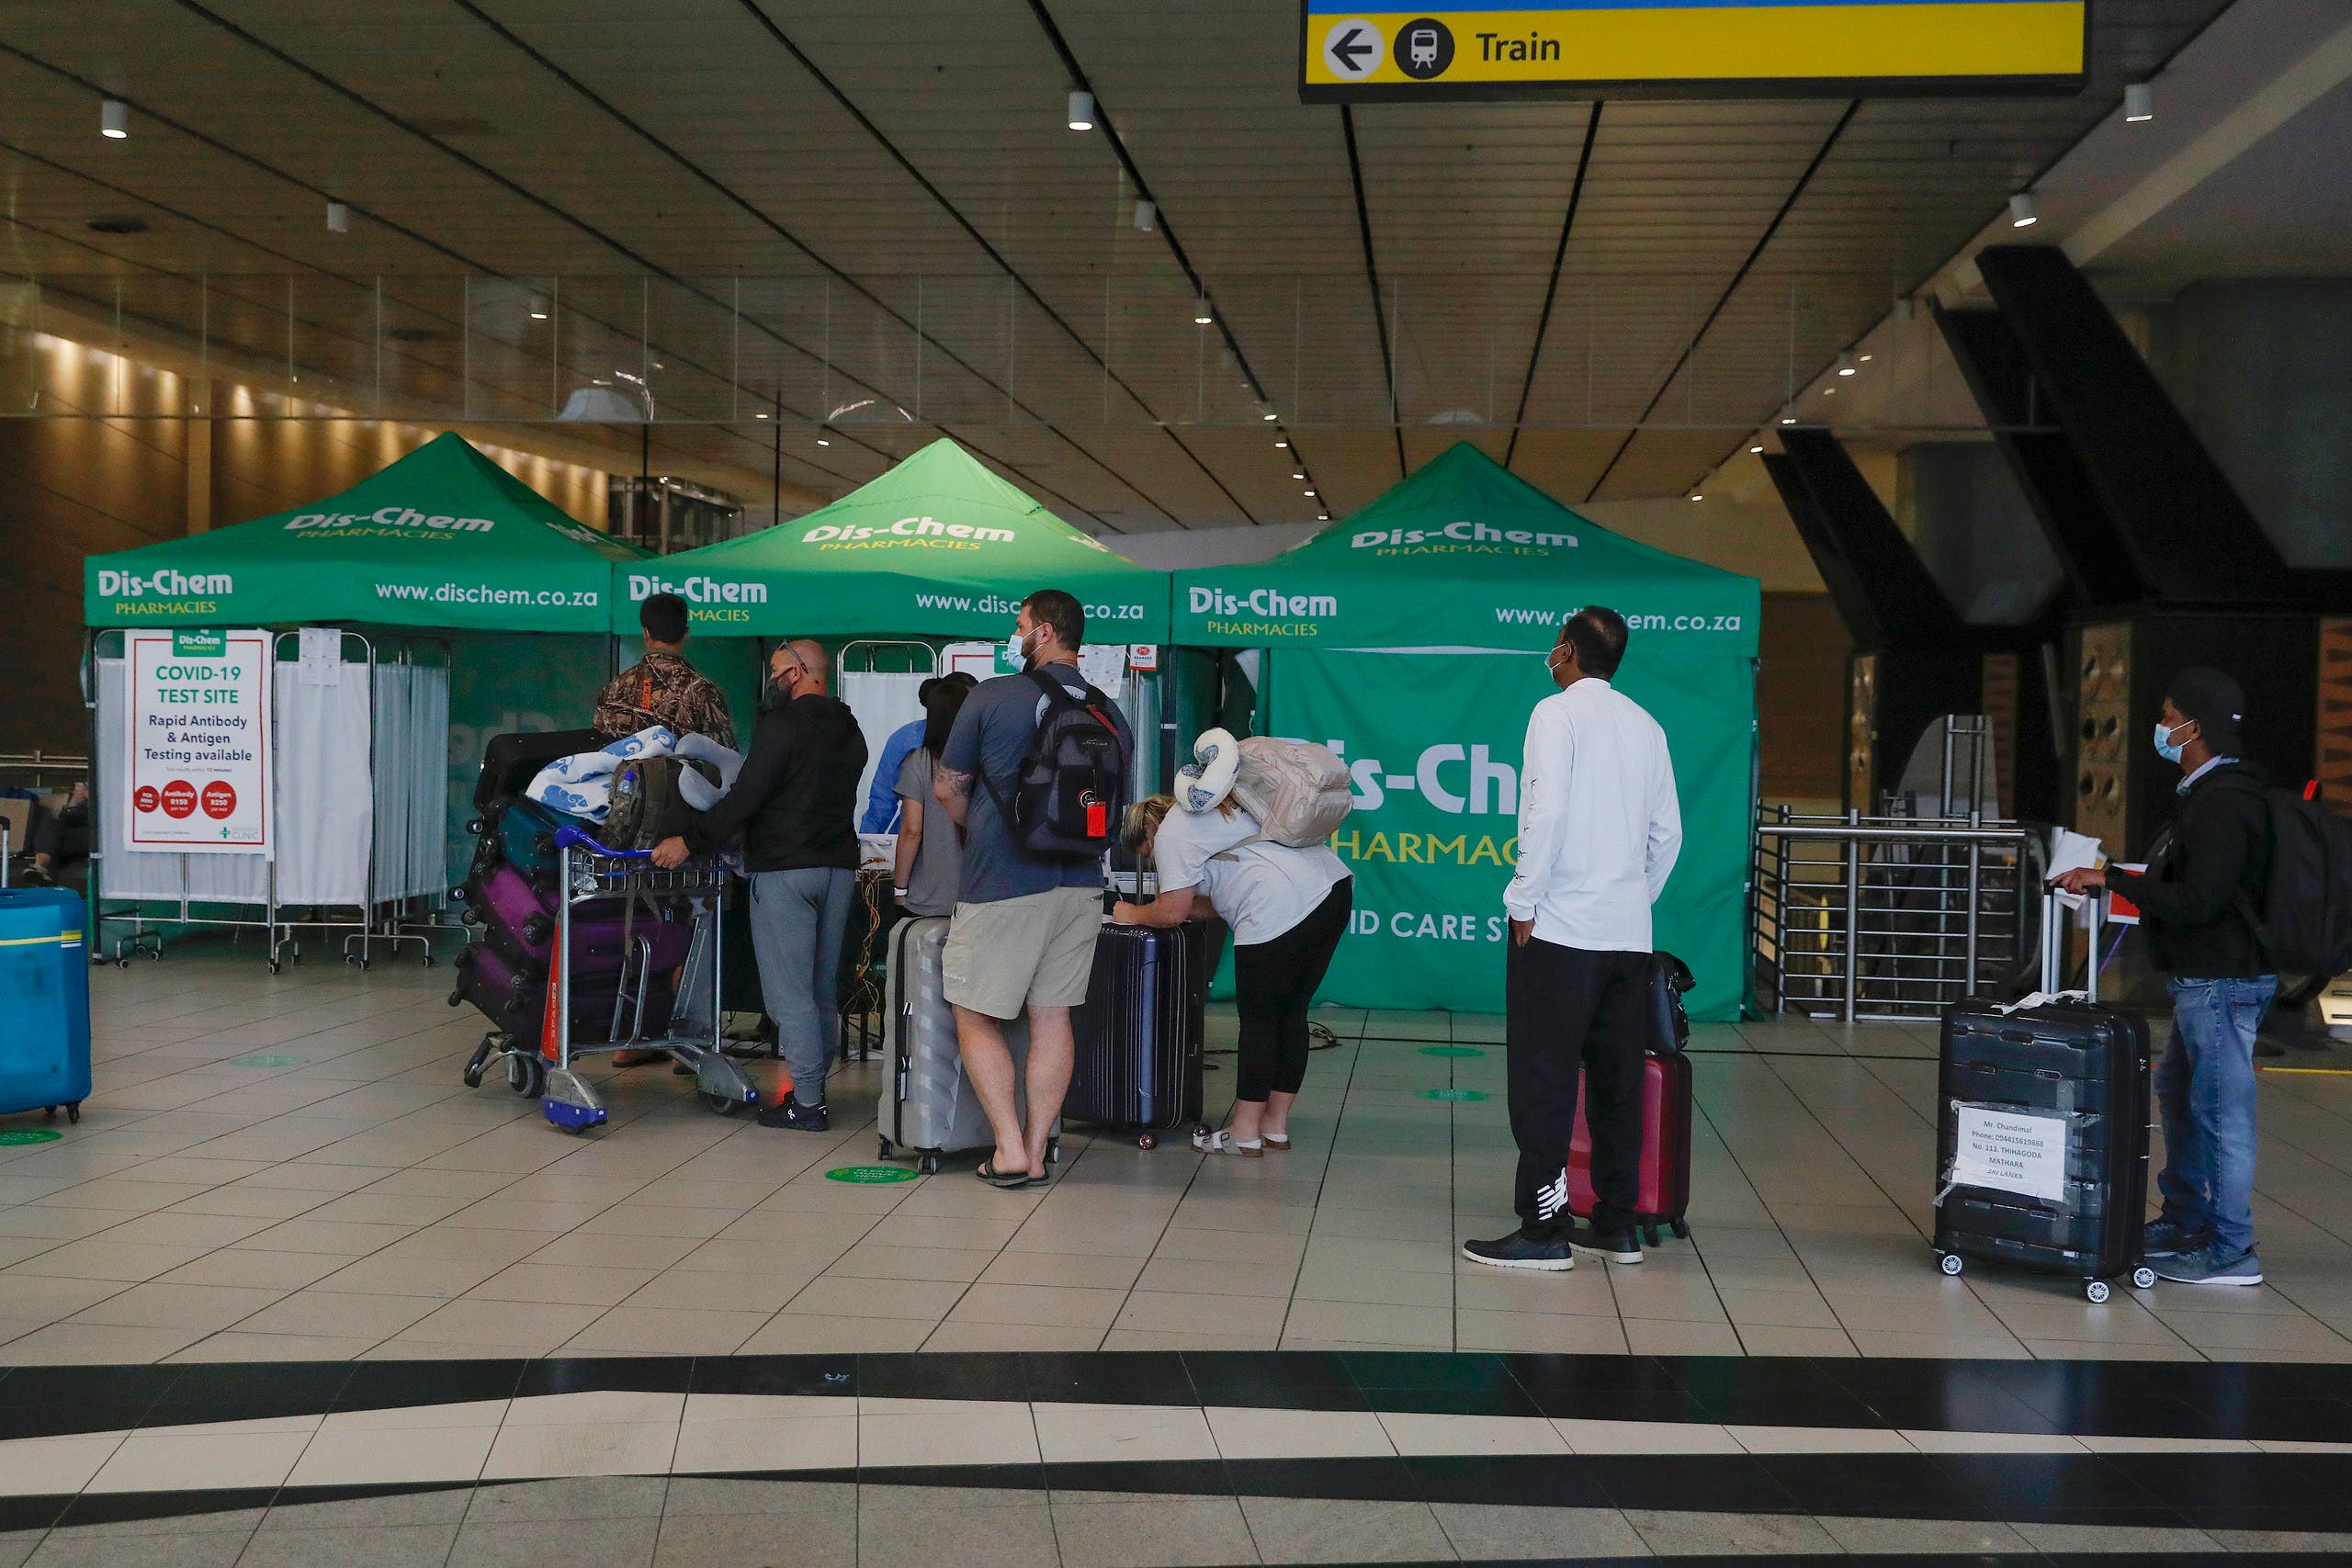 مسافرون ينتظرون للخضوع لفحص كورونا في مطار جوهانسبورغ في جنوب افريقيا حيث تم رصد أوميكرون أولاً